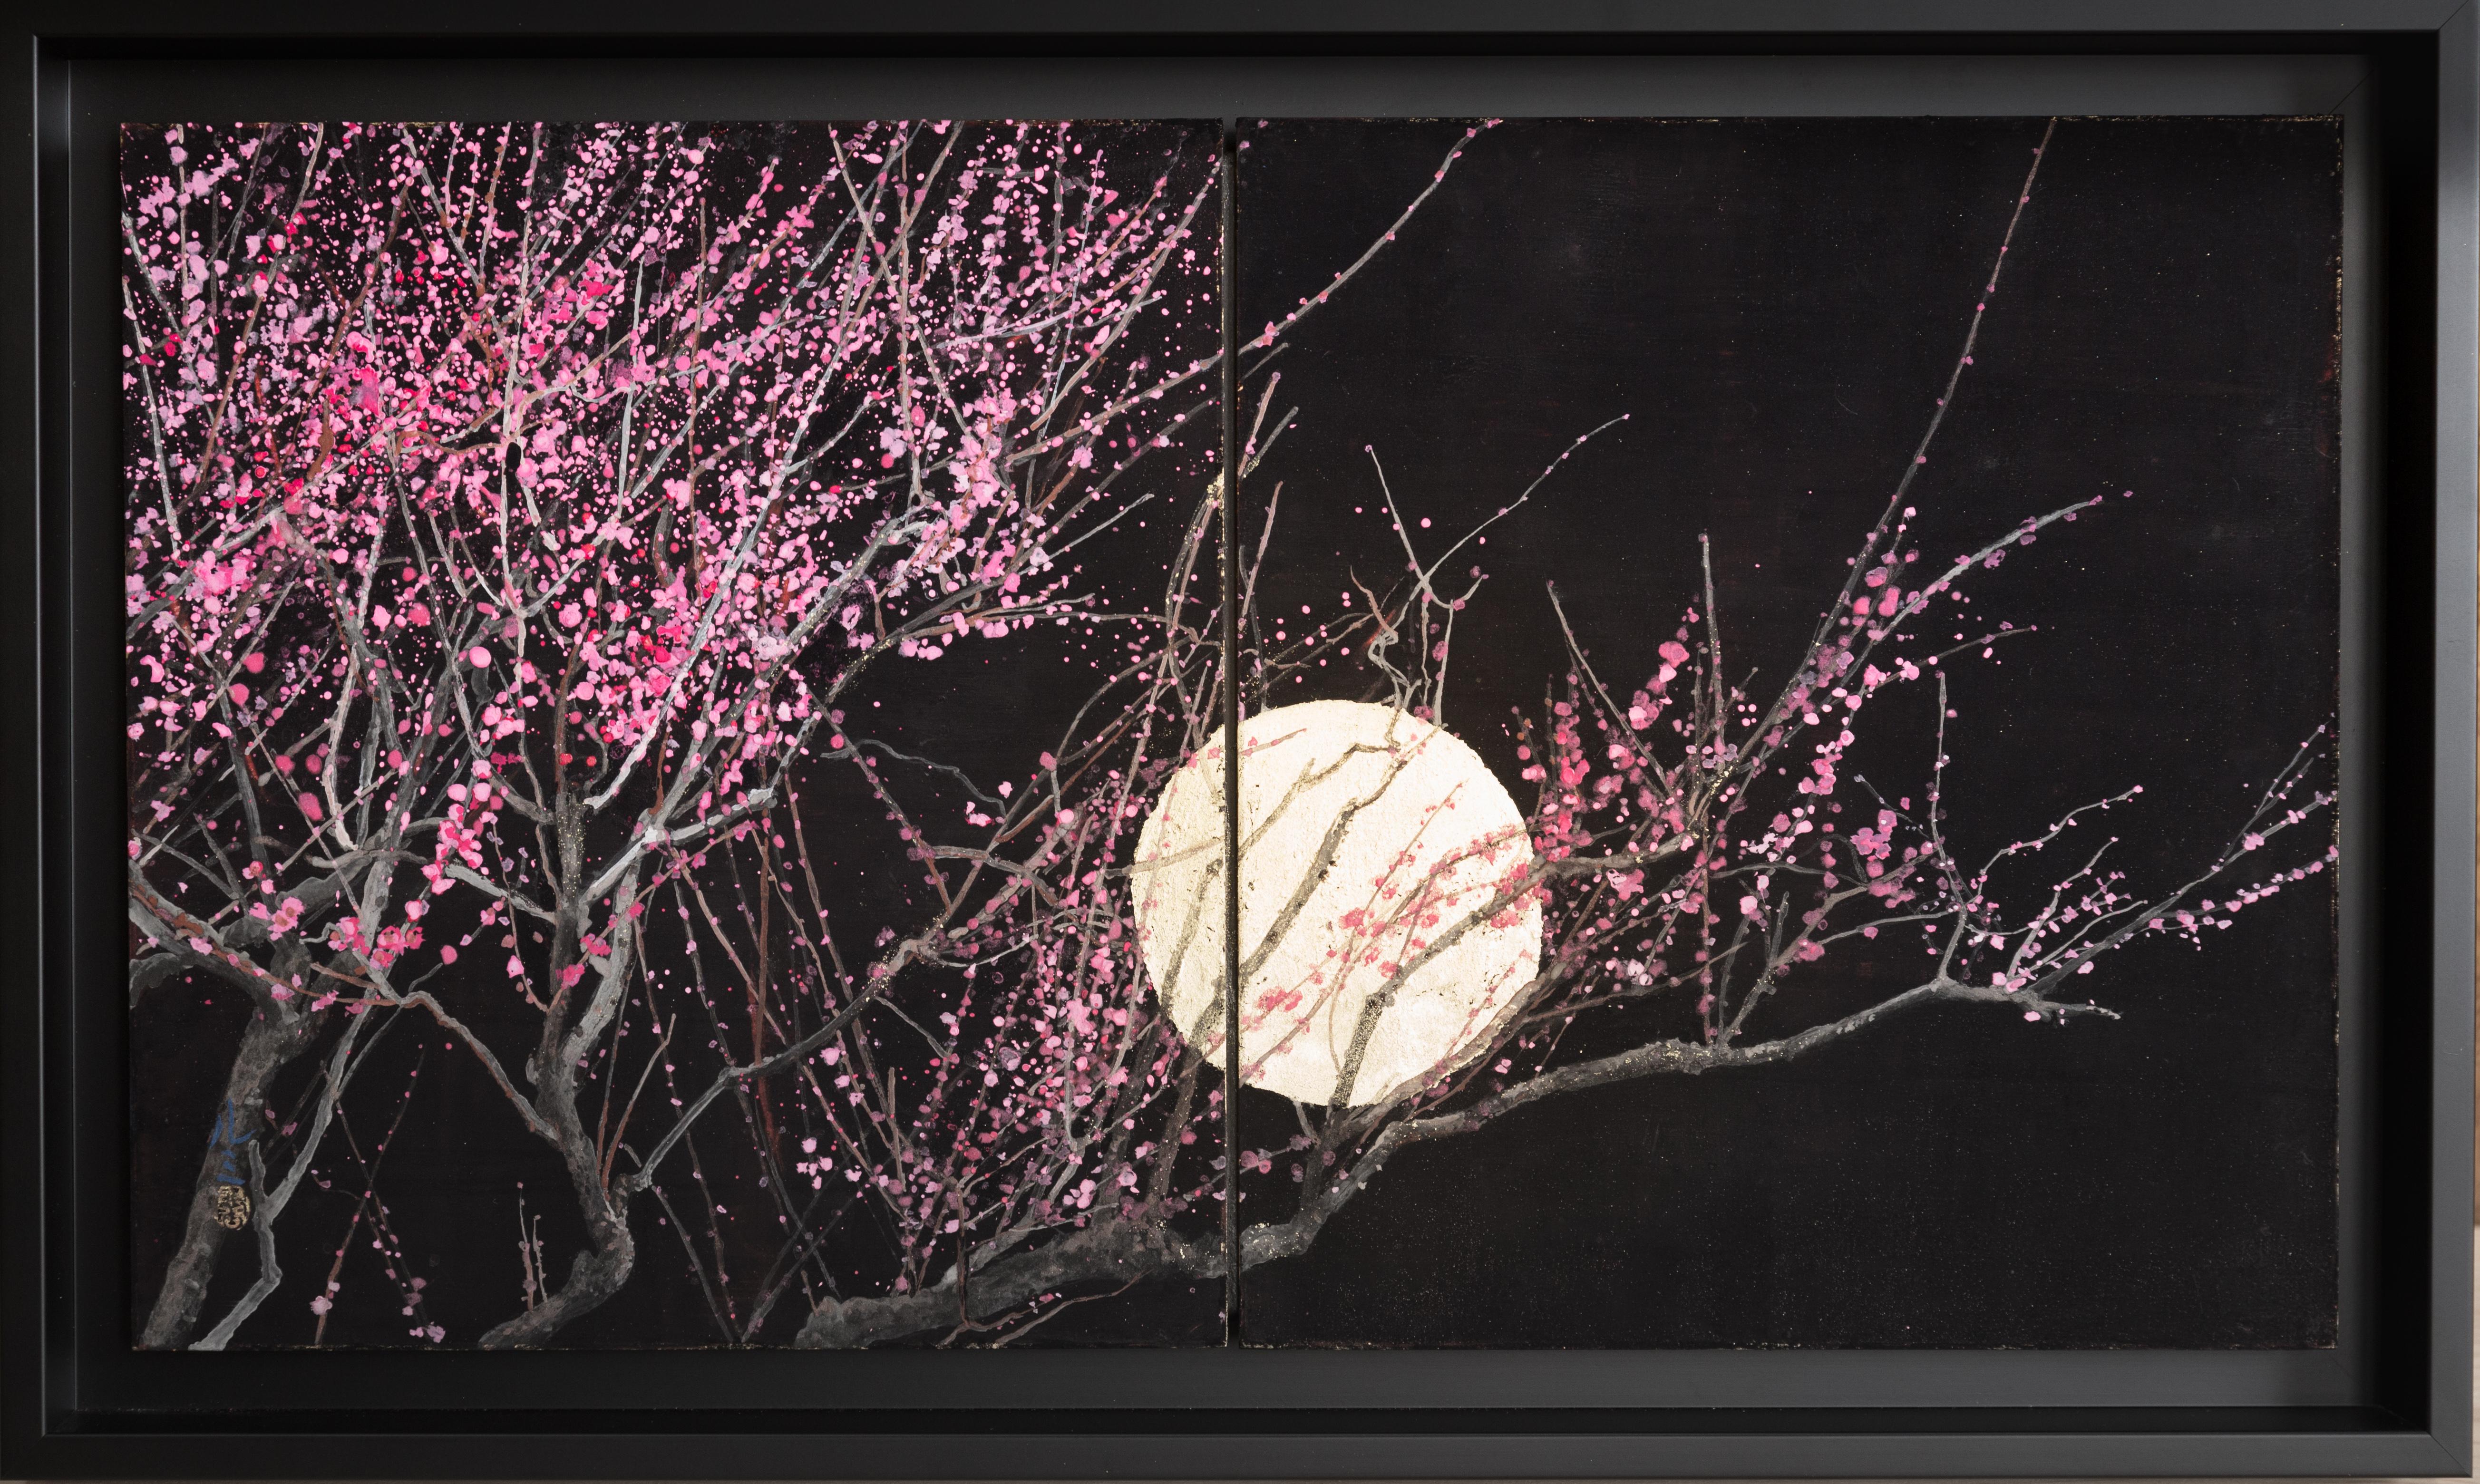 Cette œuvre représente un bel arbre rose au clair de lune. C'est une célébration de l'amour, de la tendresse et de la passion entre deux êtres. Il pourrait donc être le cadeau romantique idéal pour exprimer vos sentiments à l'être aimé le jour de la